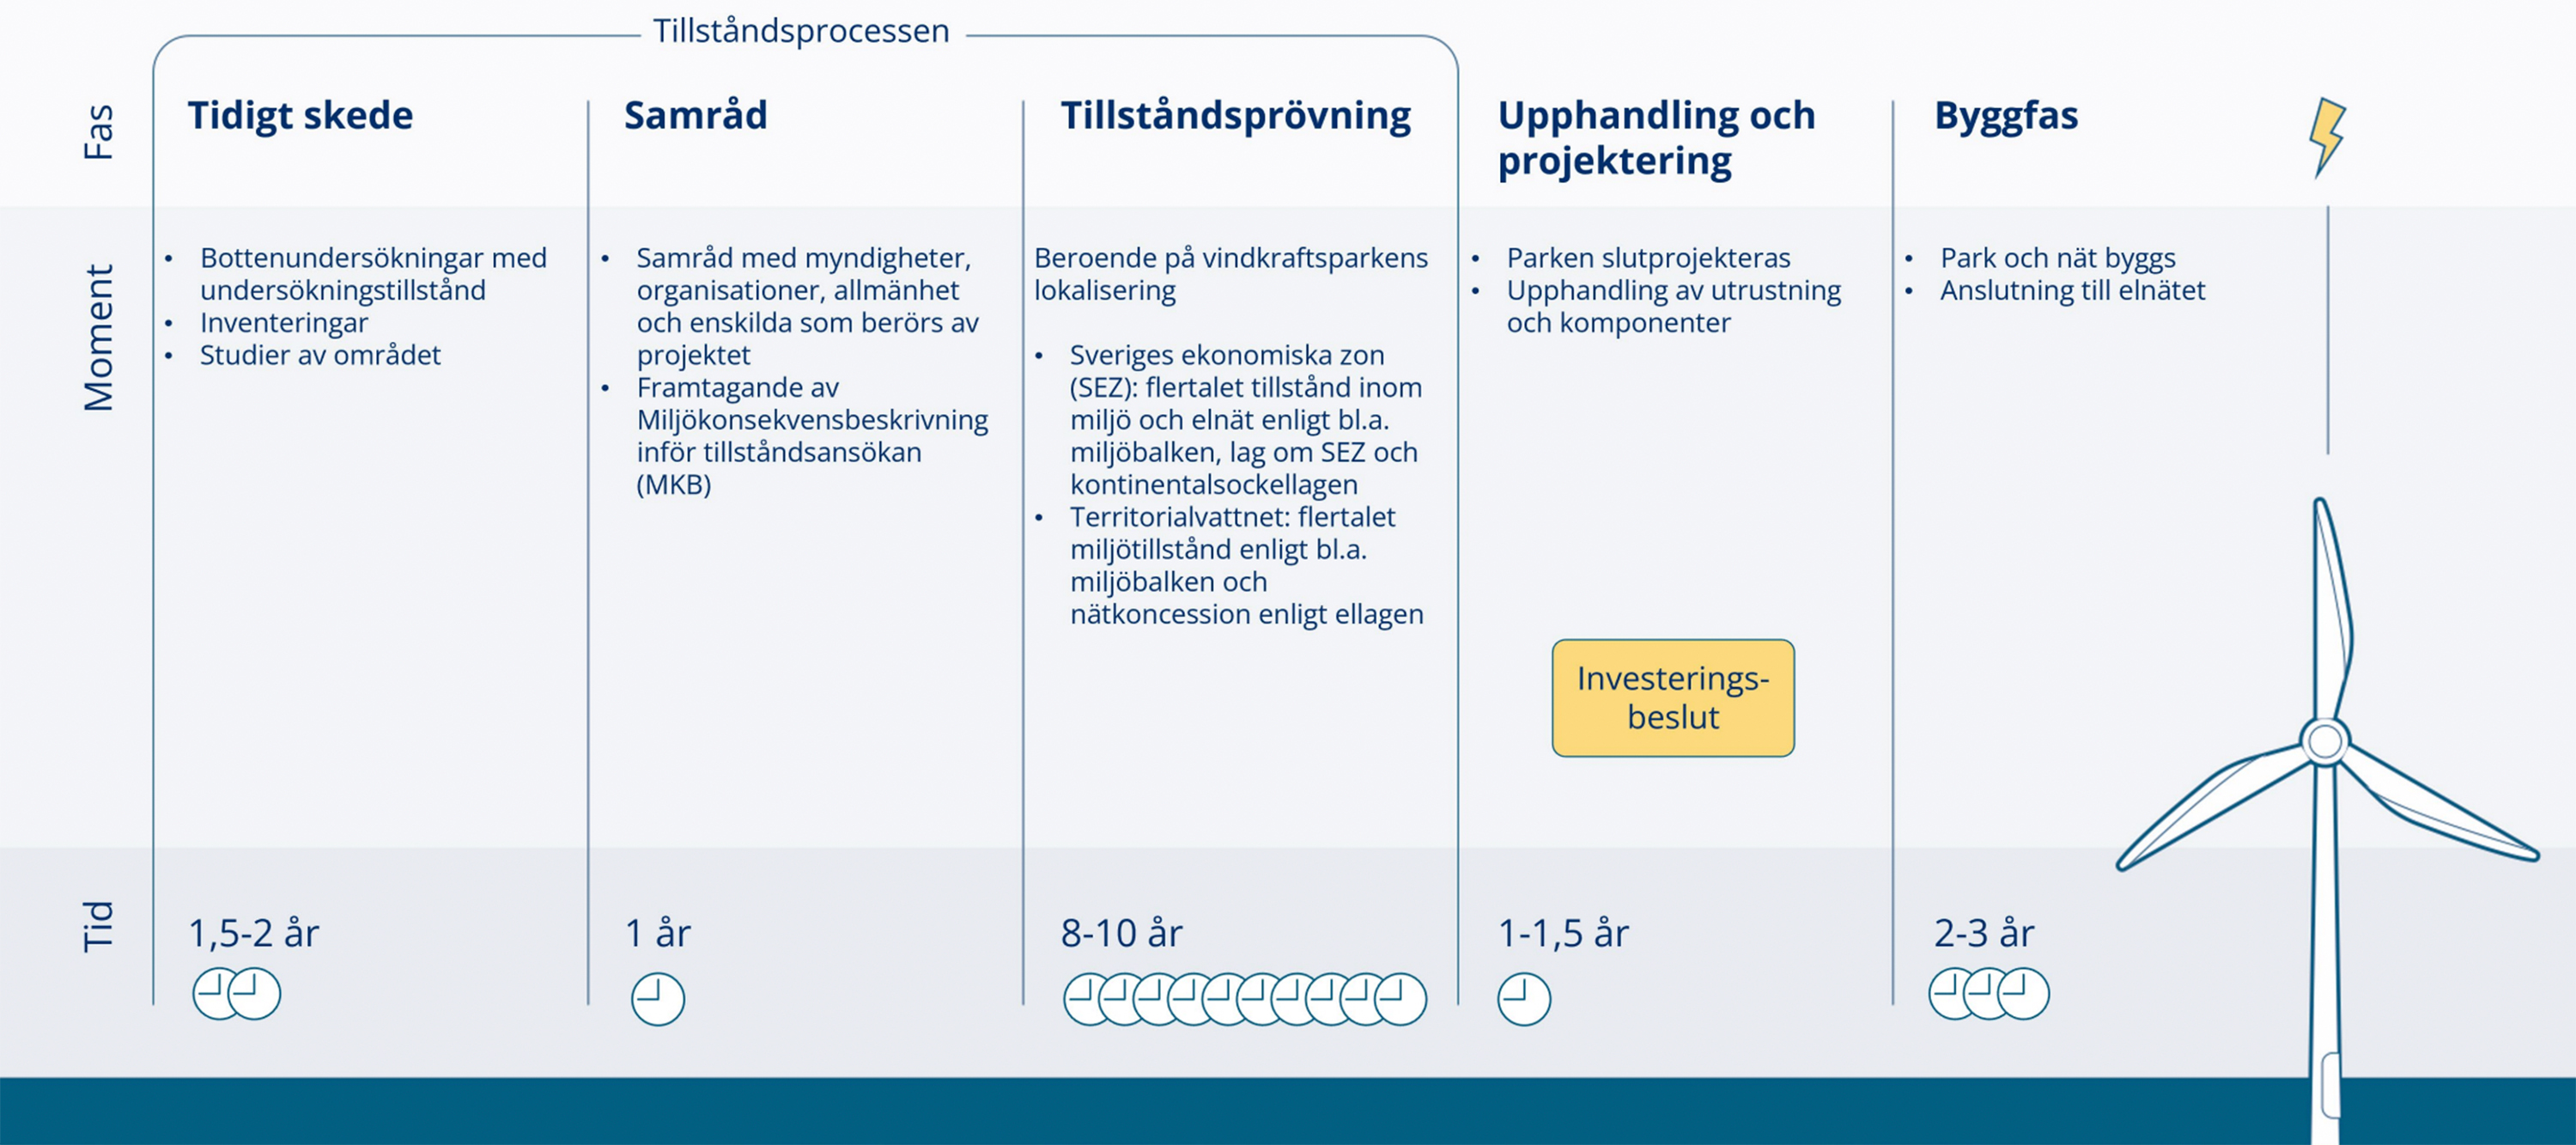 Tillståndsprocessen för havsvindkraft. Illustration: Svensk vindenergi.